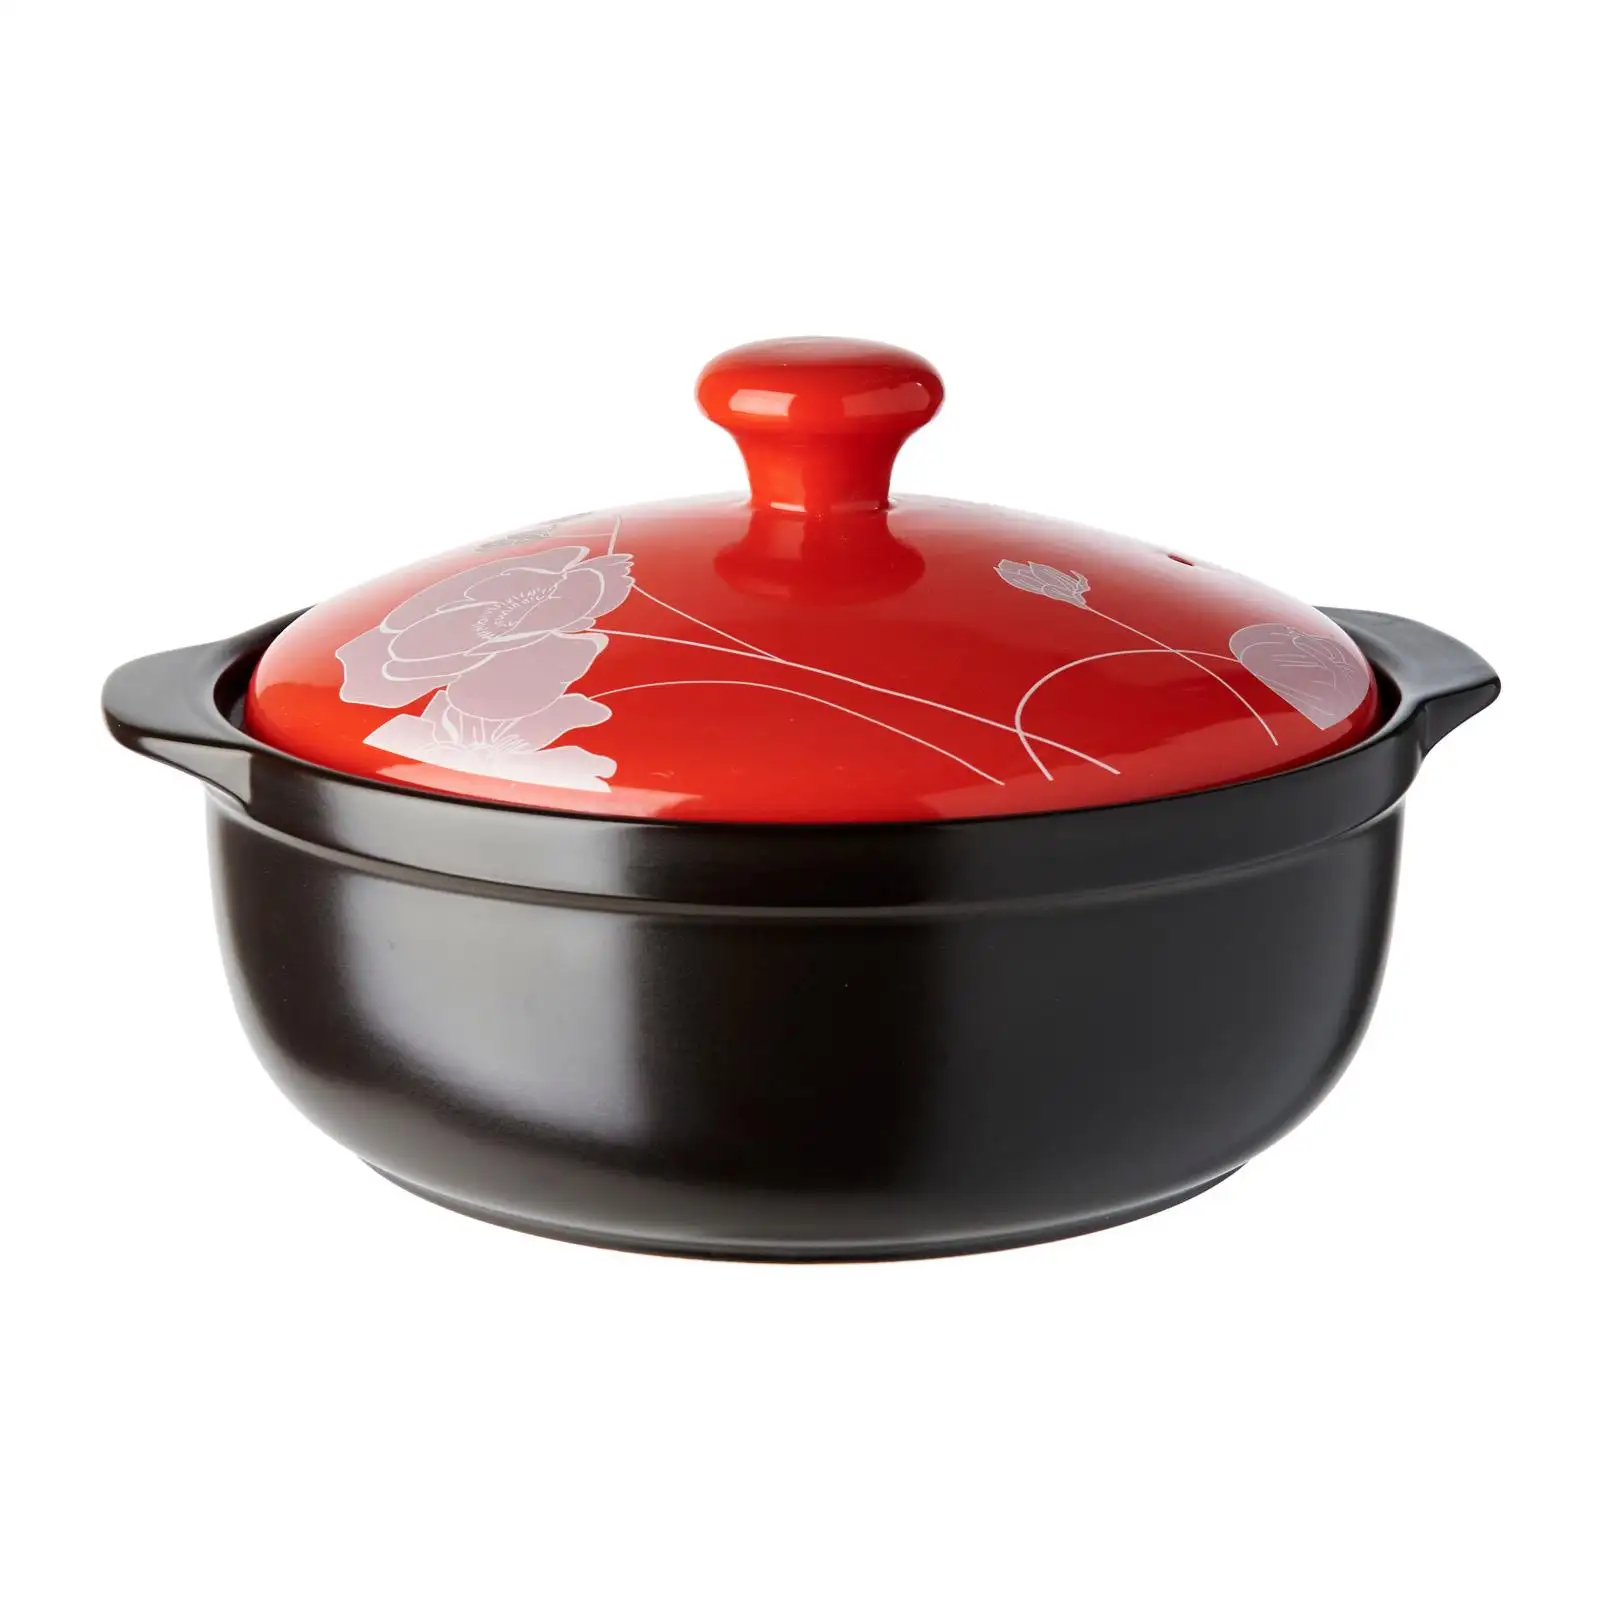 Basso MOQ 2.5L colore rosso/nero Cera Vita argento peonia casseruola pentola in ceramica per cucinare con coperchio dimensioni D25 x H9cm